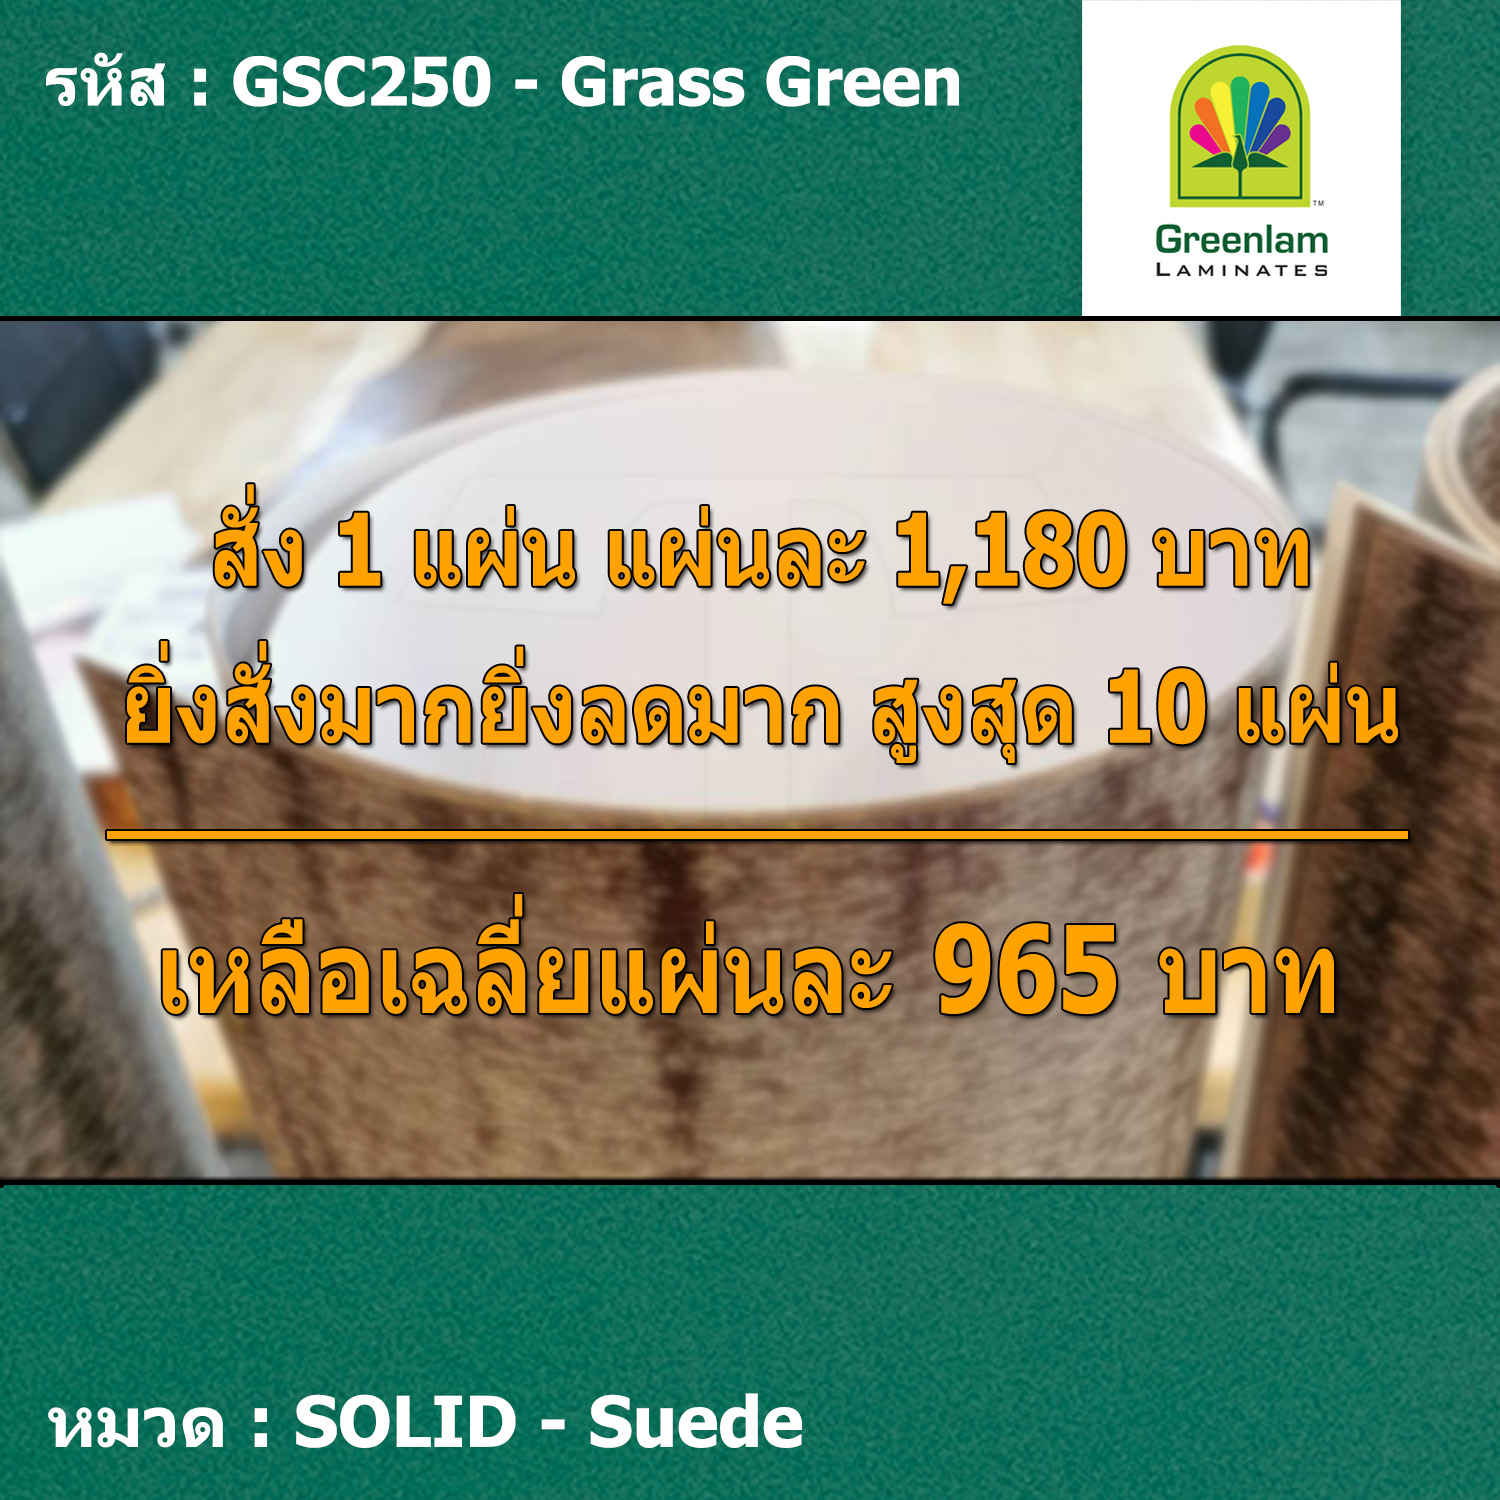 แผ่นโฟเมก้า แผ่นลามิเนต ยี่ห้อ Greenlam สีเขียวเข้ม รหัส GSC250 Grass Green พื้นผิวลาย Suede ขนาด 1220 x 2440 มม. หนา 0.80 มม. ใช้สำหรับงานตกแต่งภายใน งานปิดผิวเฟอร์นิเจอร์ ผนัง และอื่นๆ เพื่อเพิ่มความสวยงาม formica laminate GSC250